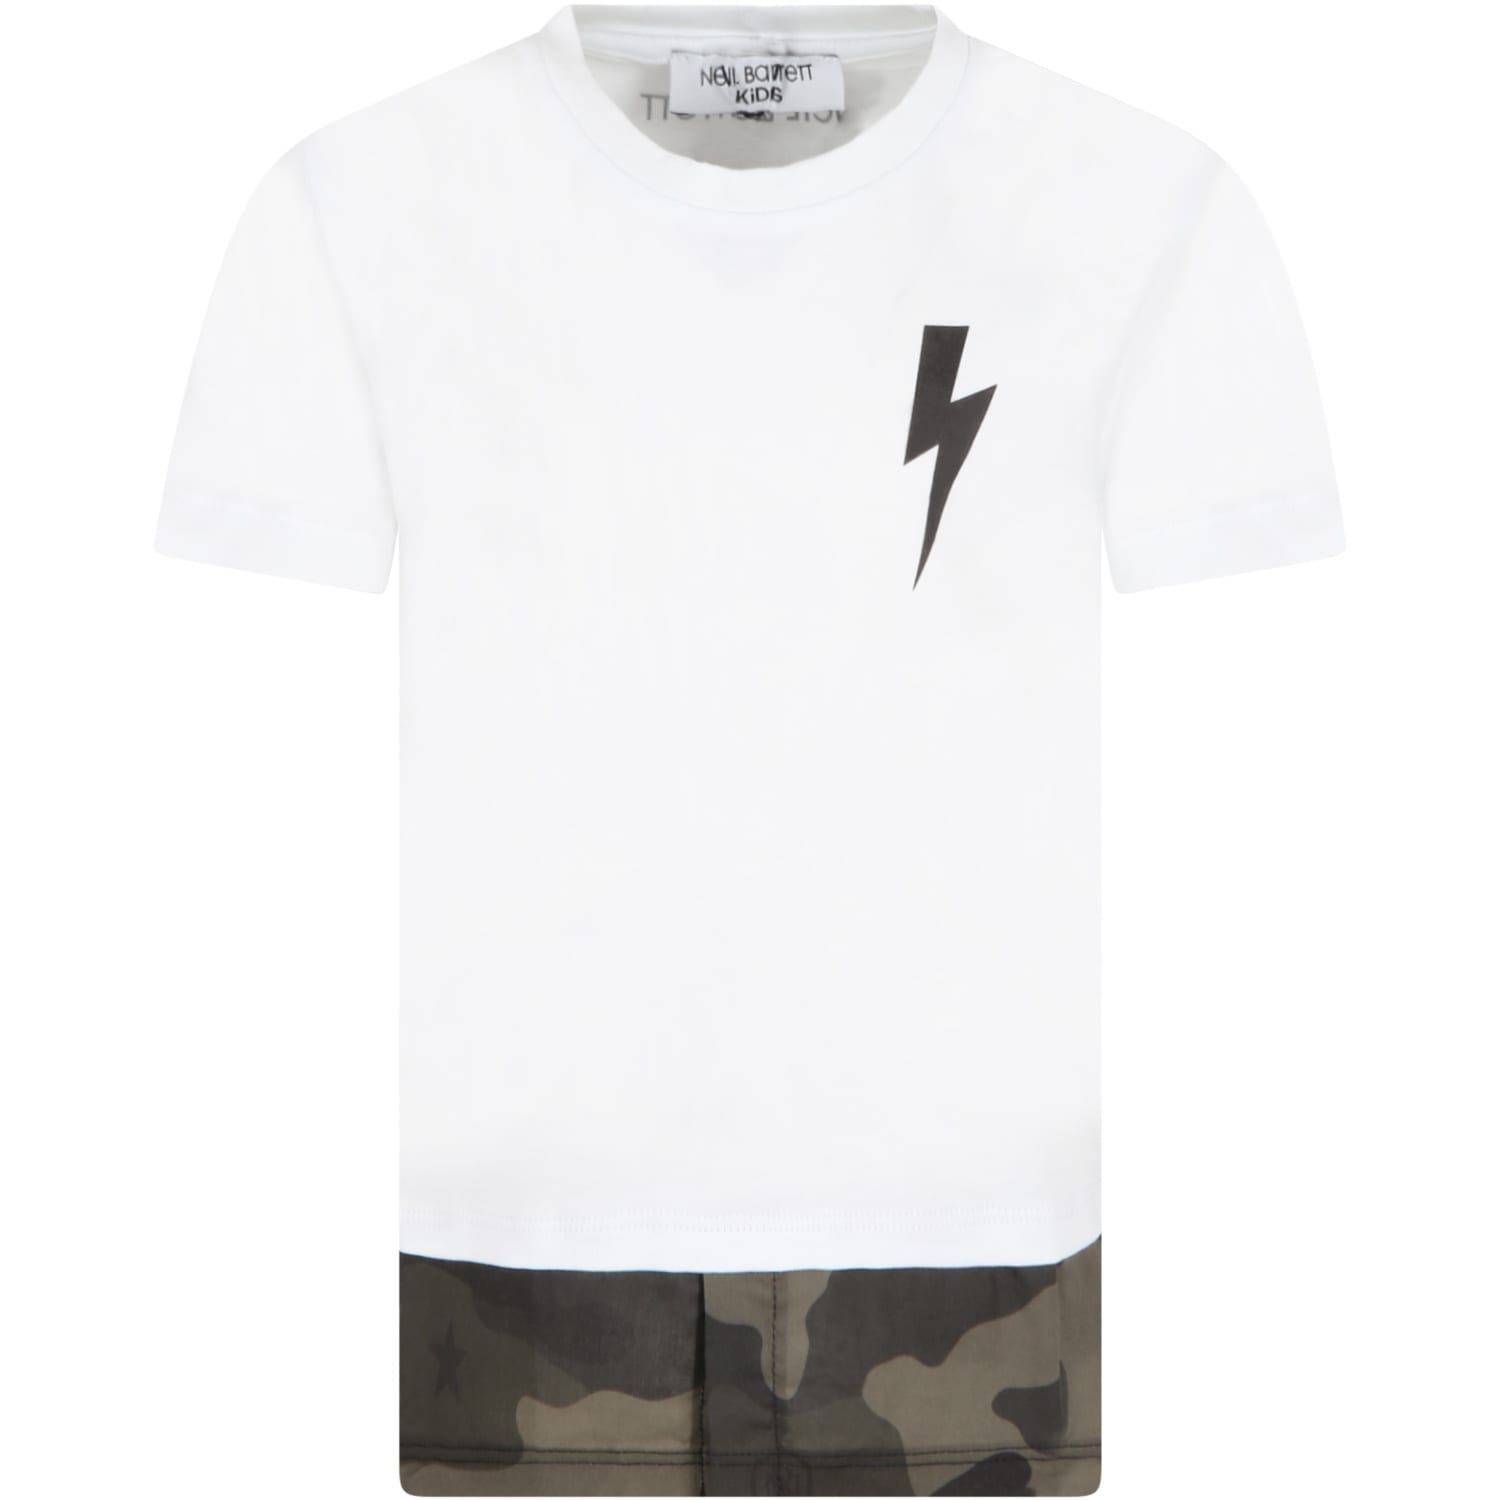 Neil Barrett White T-shirt For Boy With Thunder